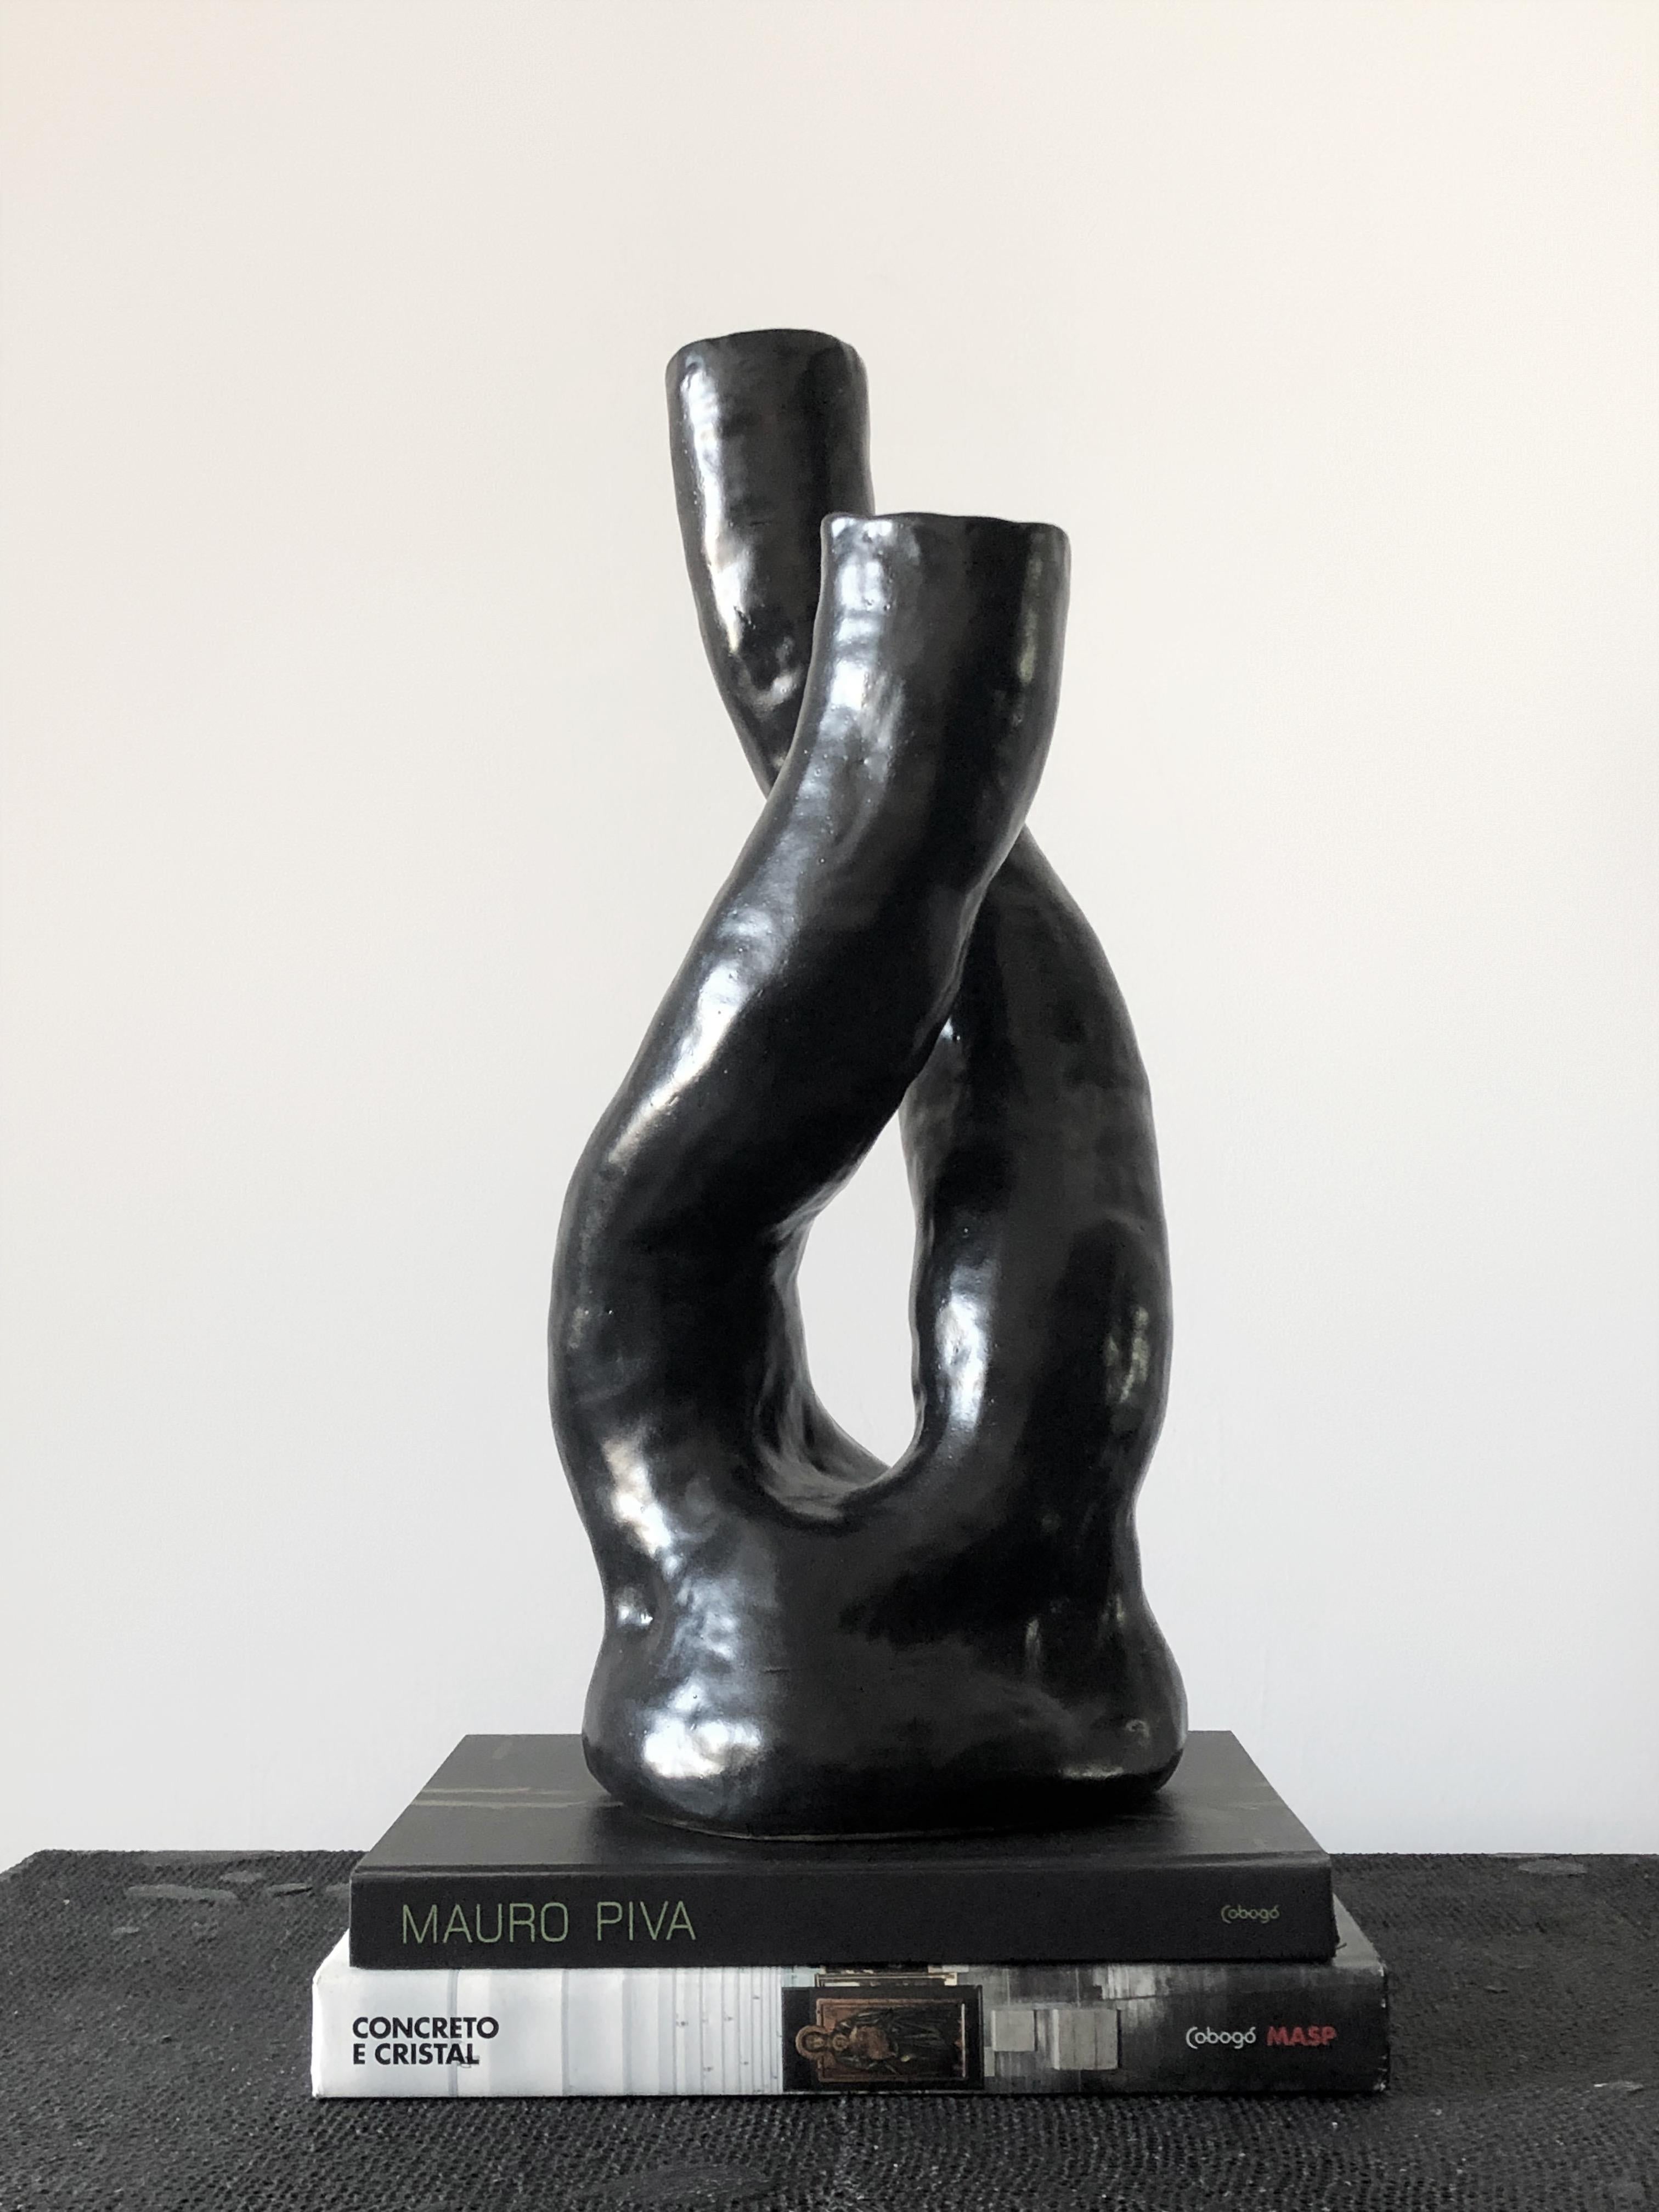 Le vase de la série Alba, en particulier le vase N.3, est une pièce unique qui respecte le processus artisanal. Fabriqué sans moule, chaque vase absorbe les contours et les textures distincts de la main de l'artiste, ce qui donne une forme nette et